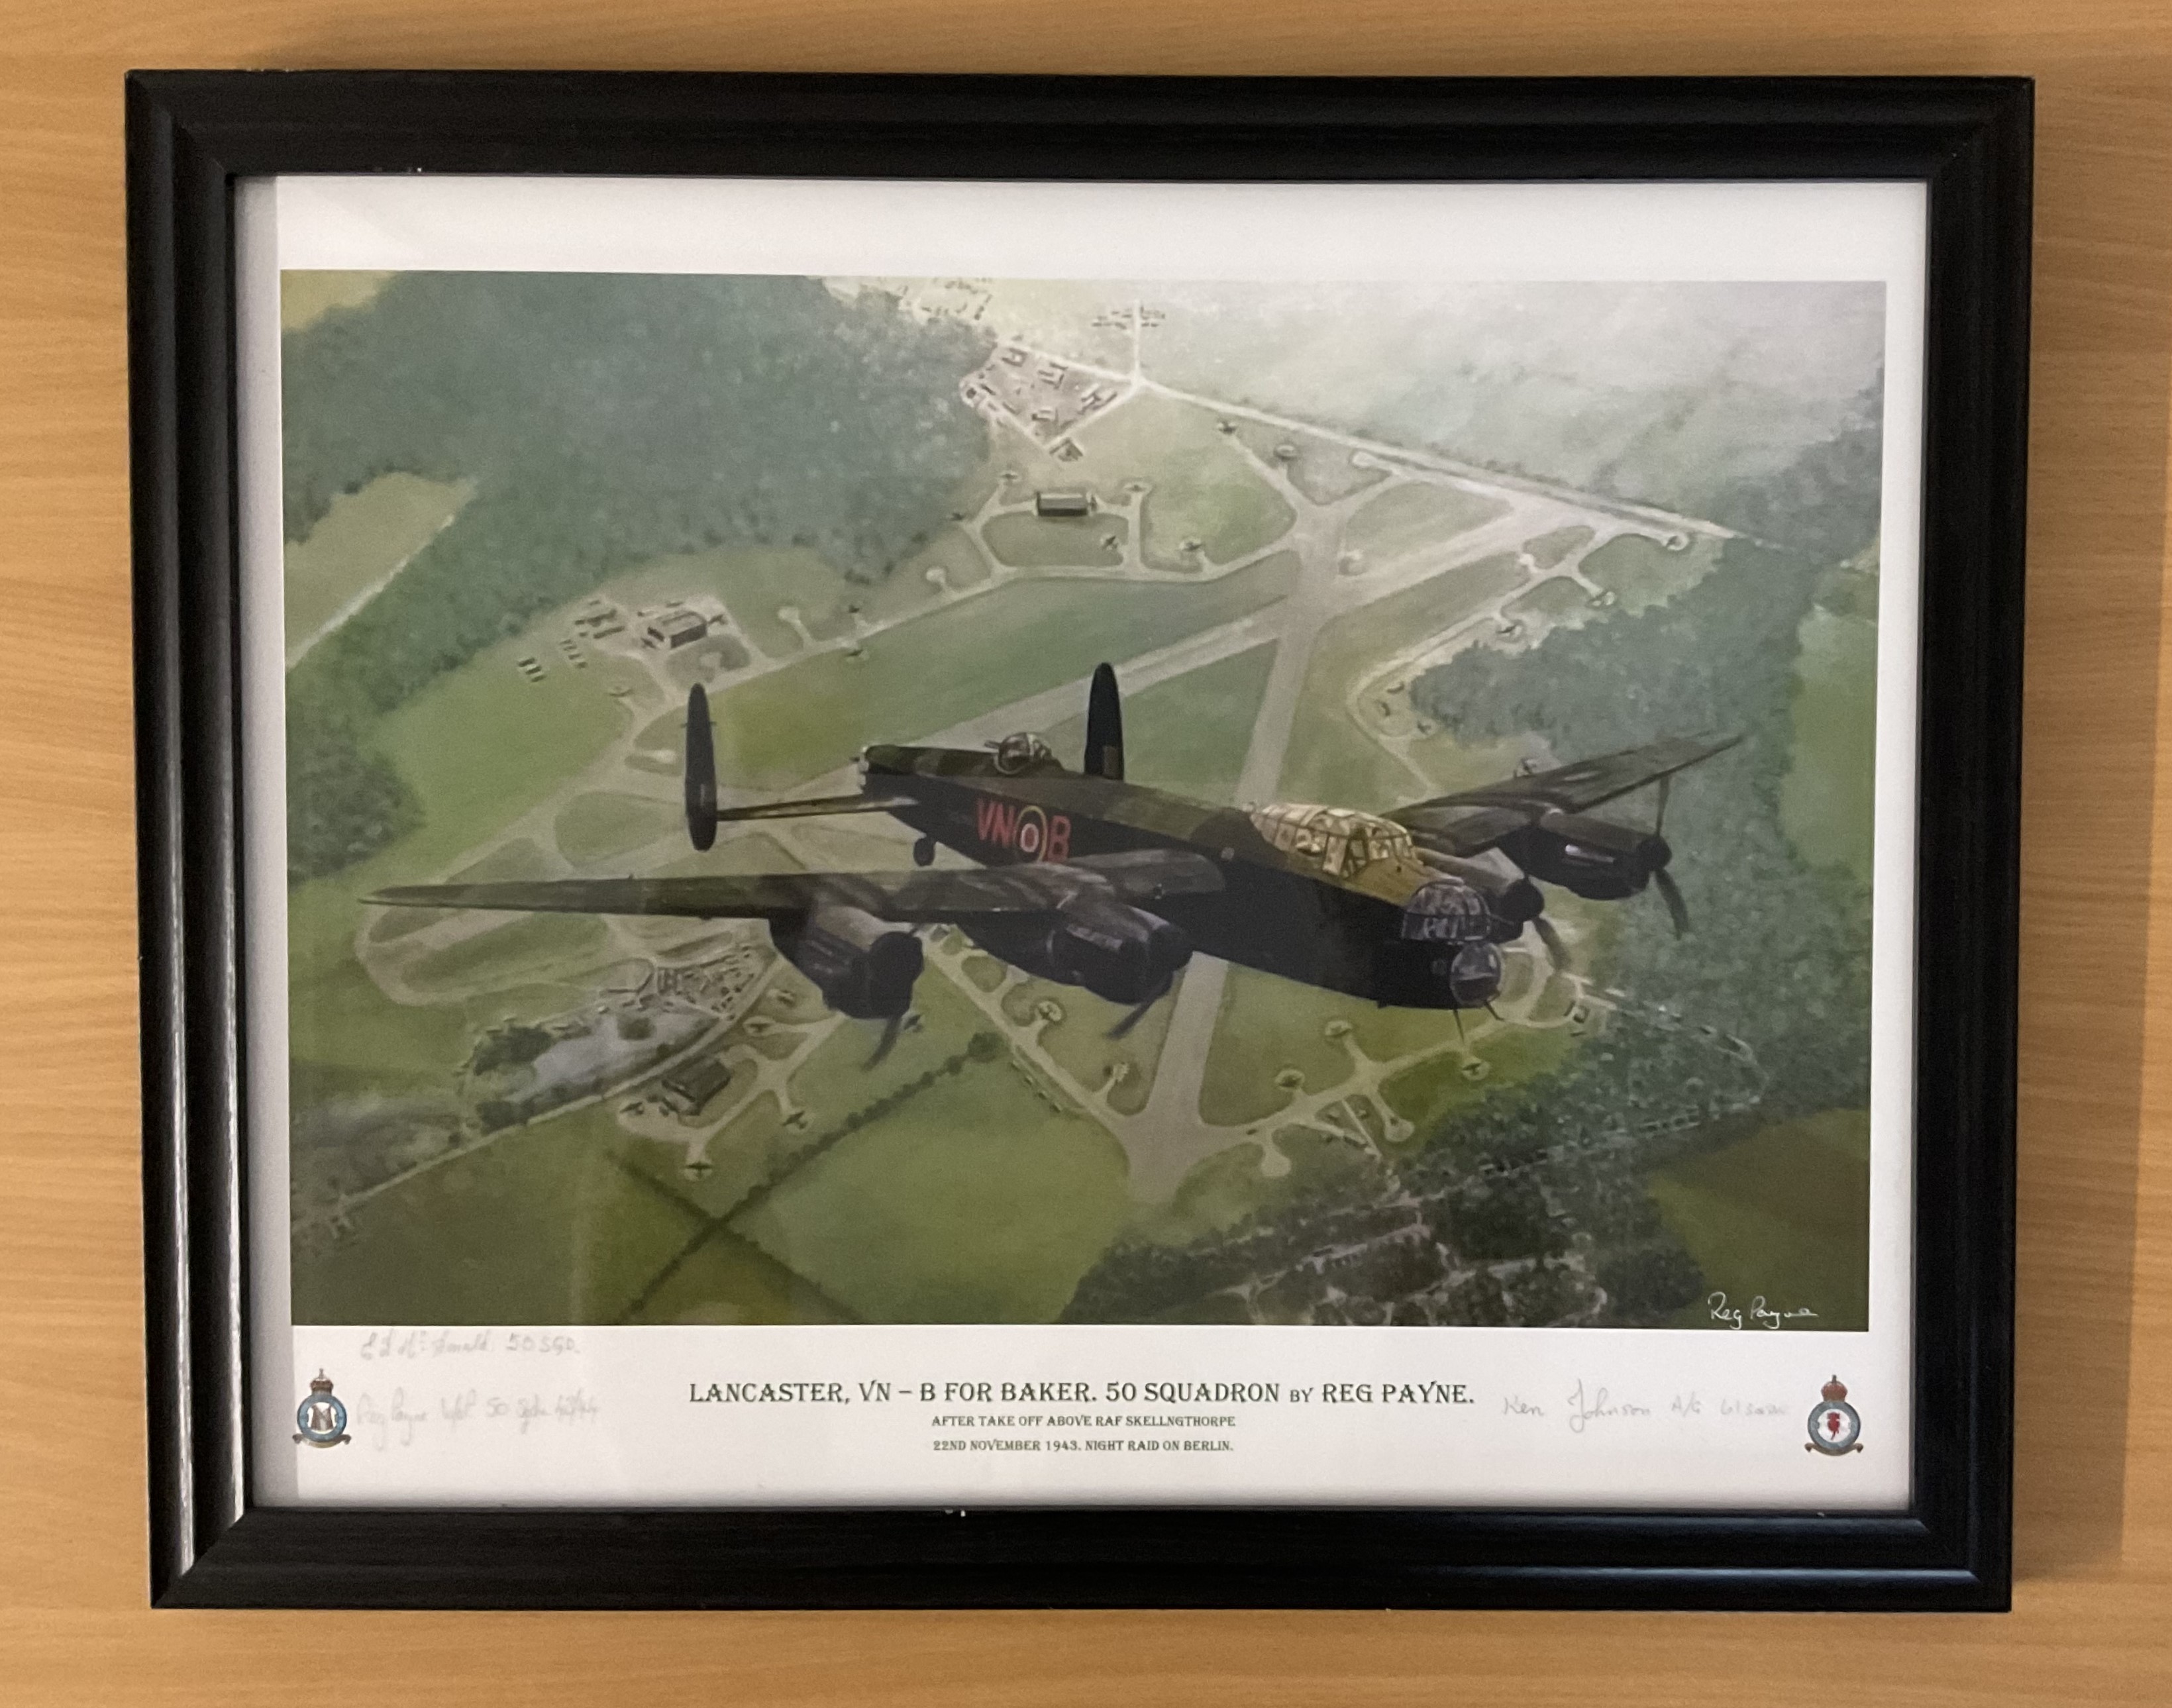 Lancaster V-N B For Baker. 50 Squadron (After take-off above RAF Skellngthorpe 22nd November 1943.